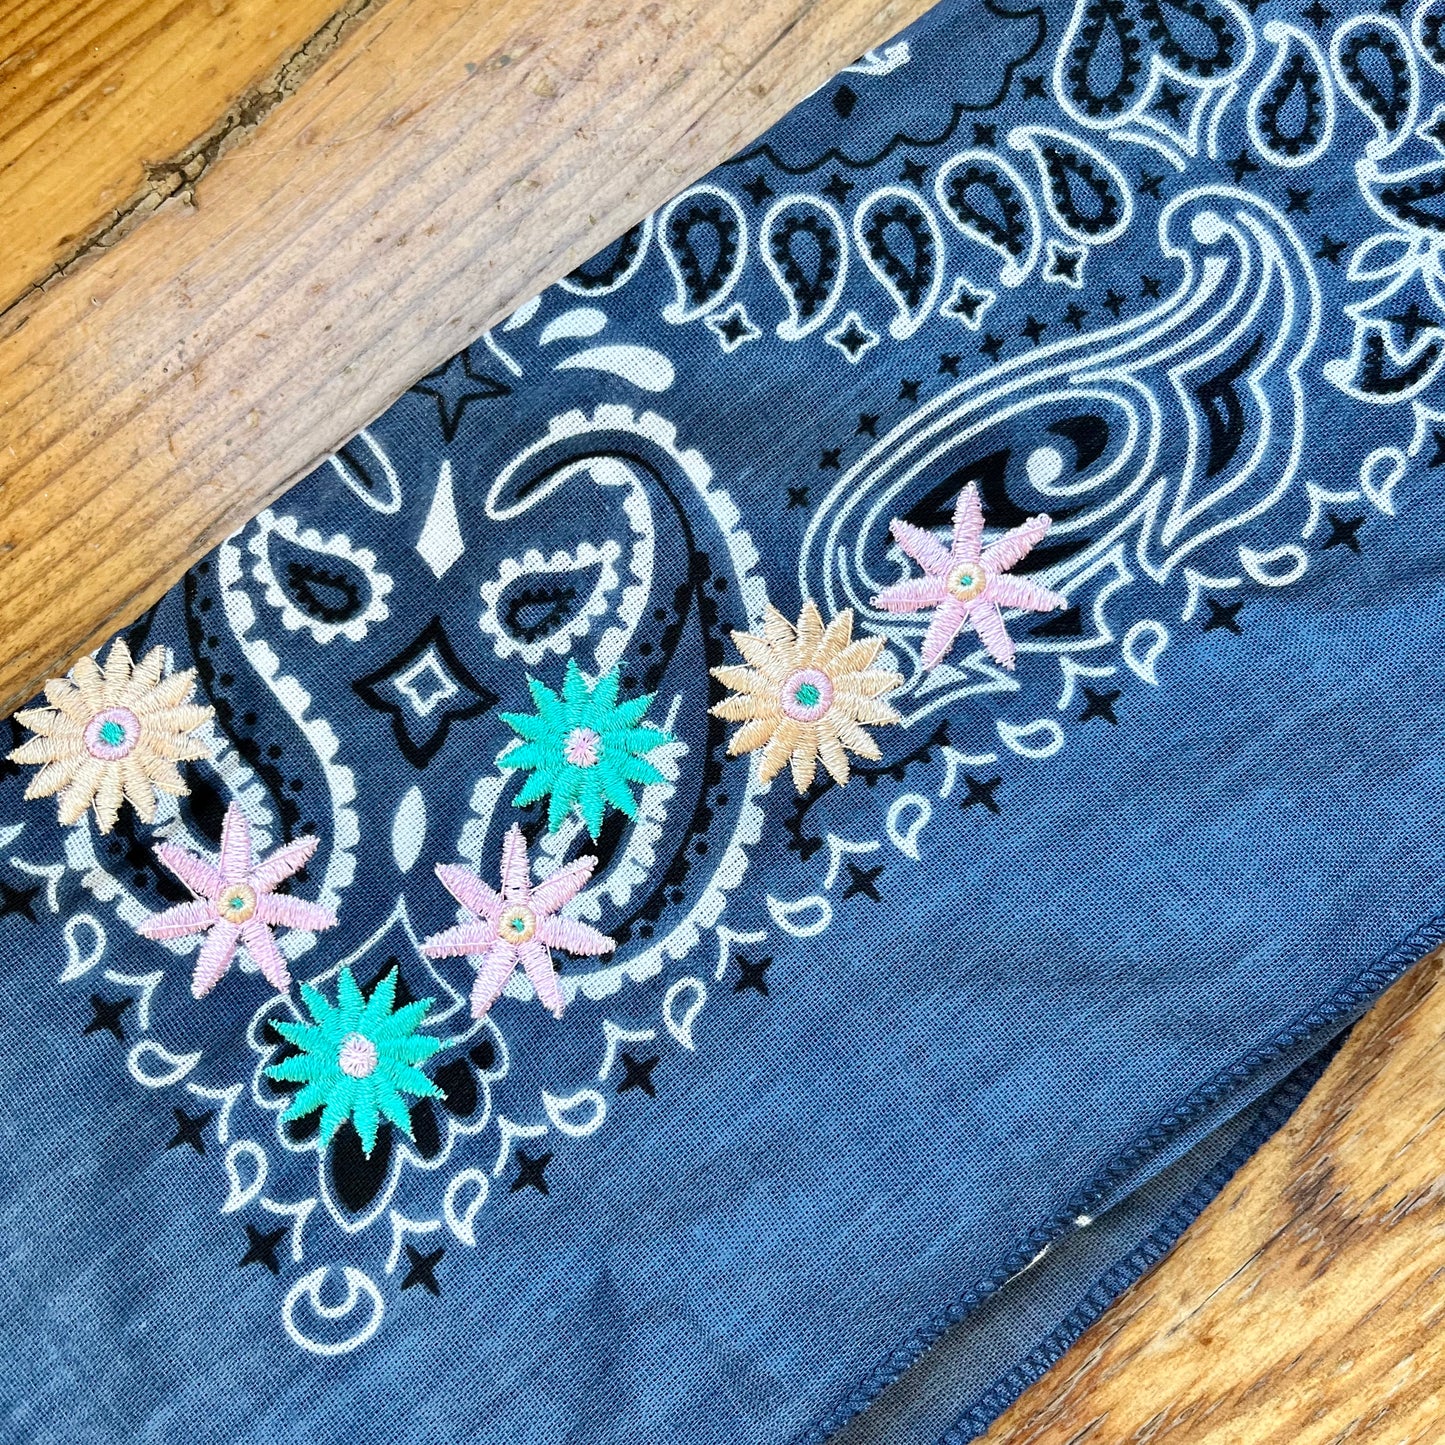 Blue bandana met flower design